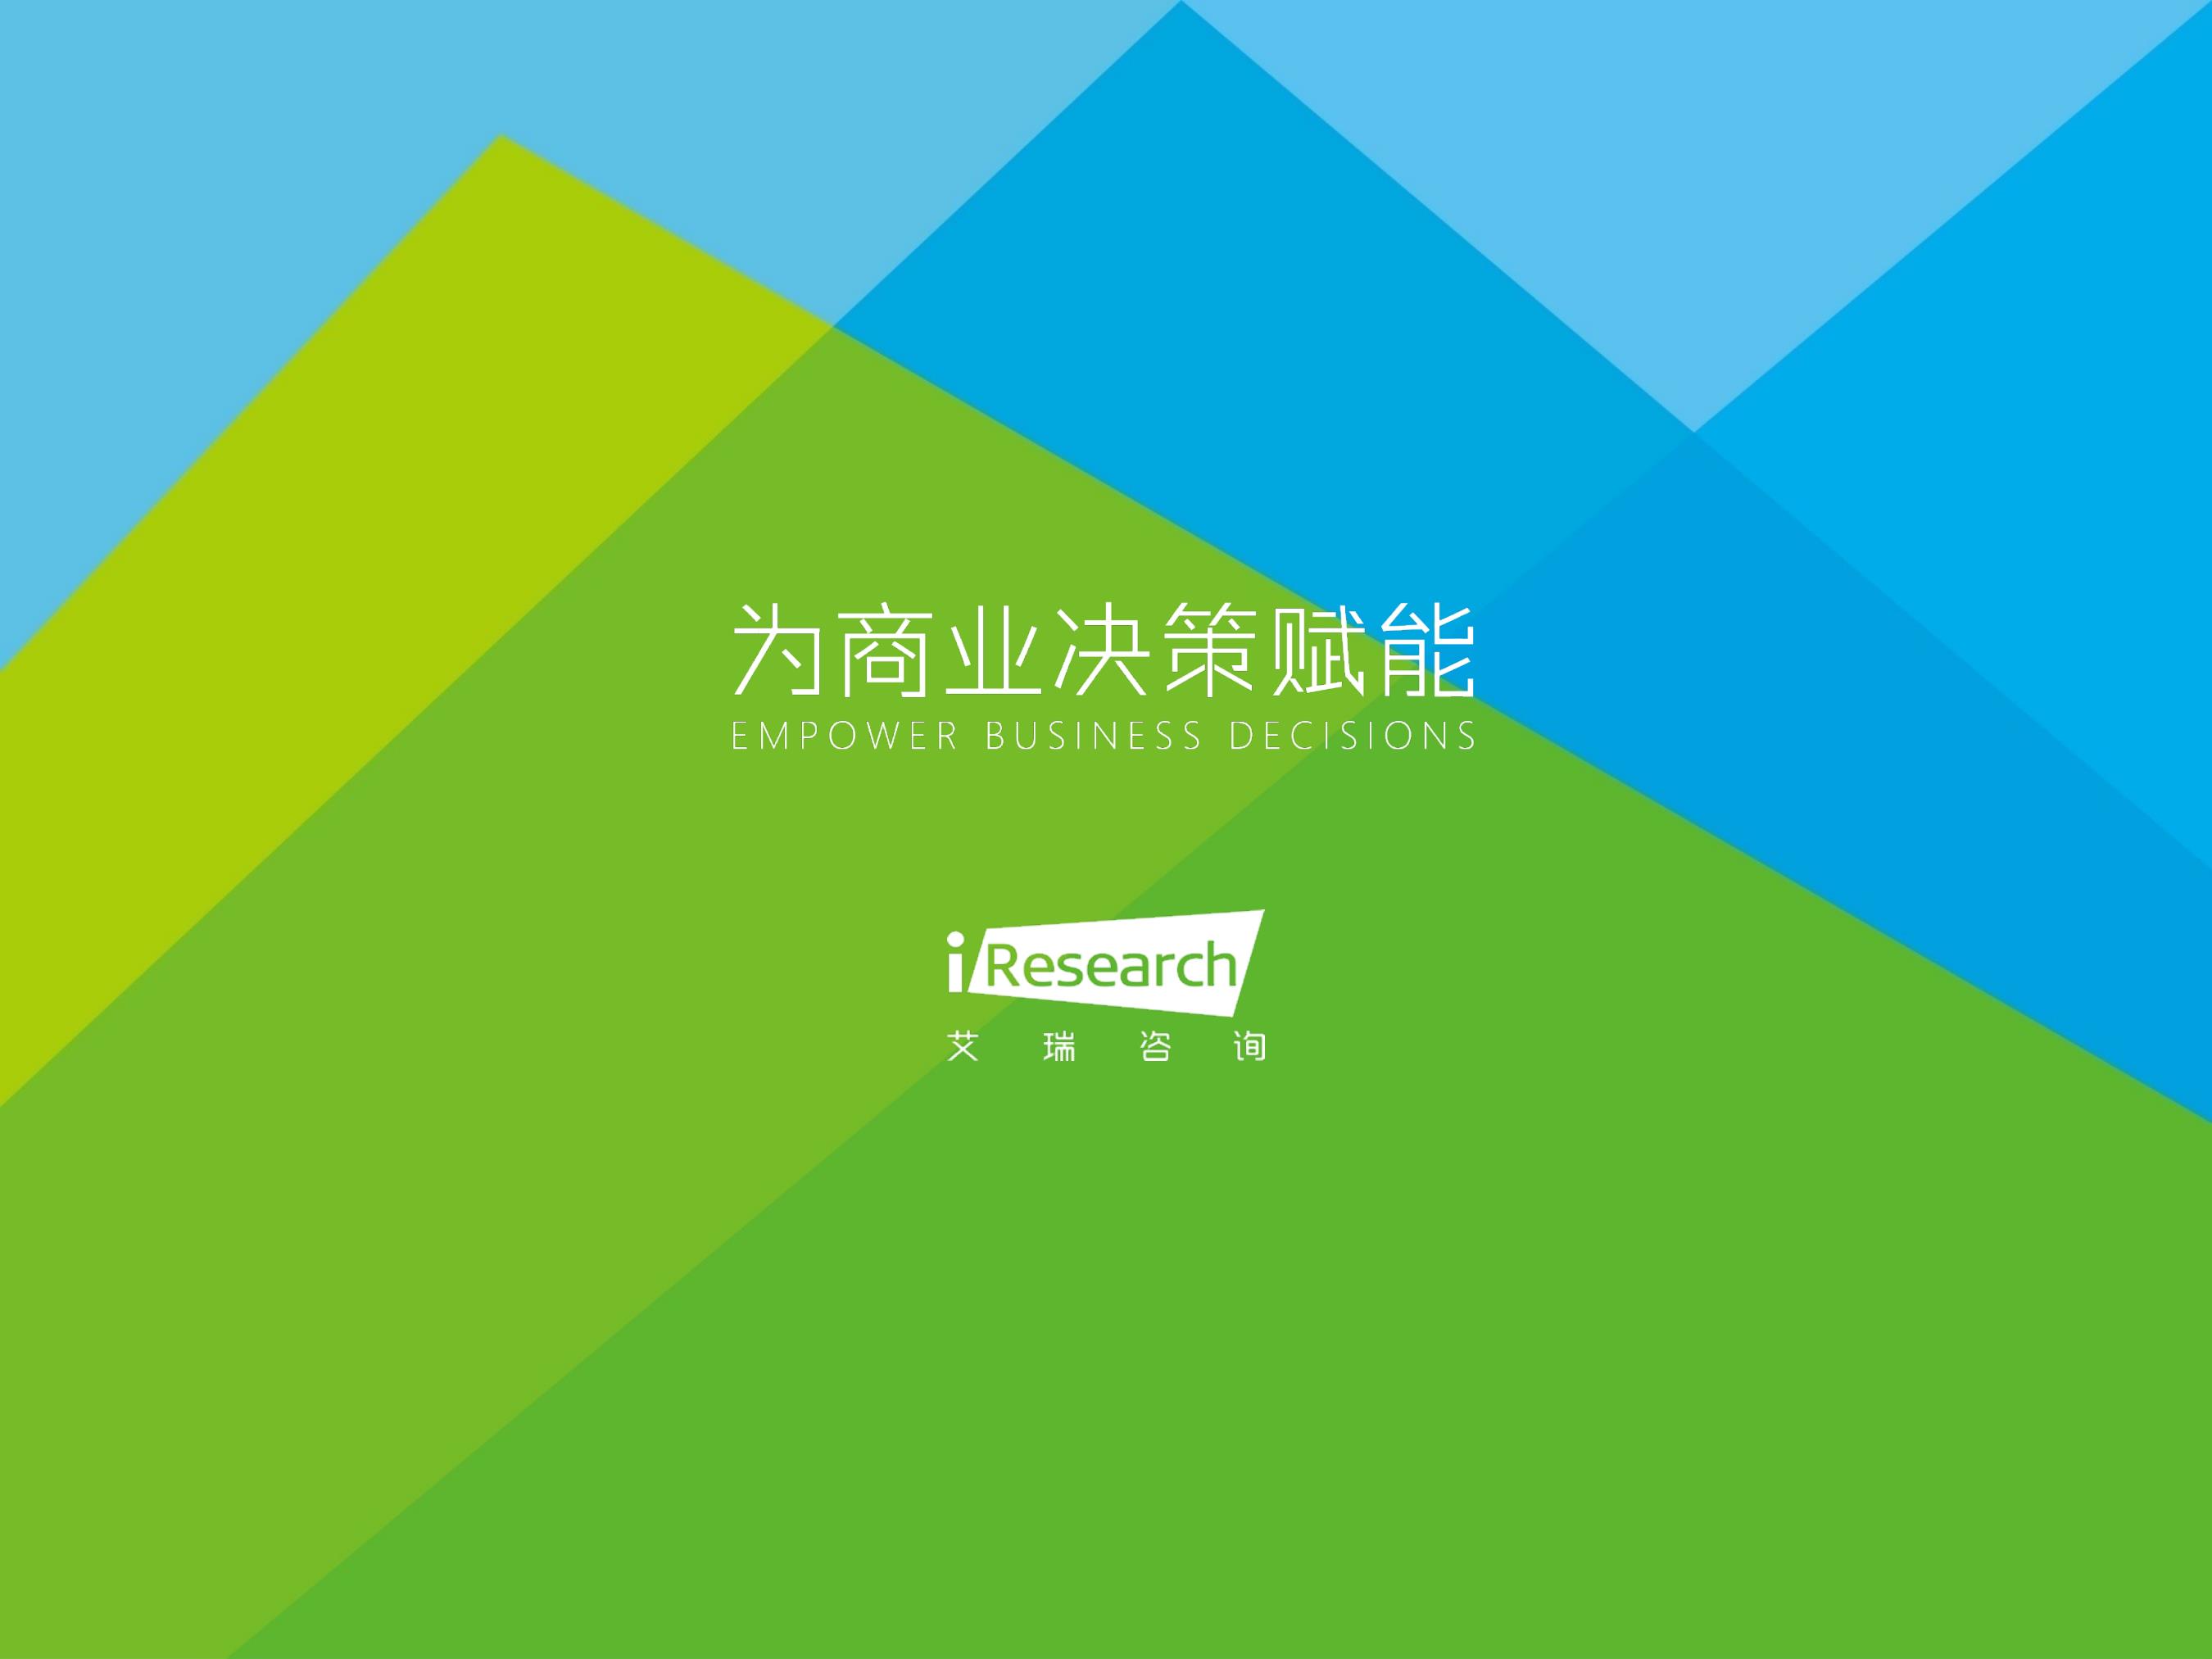 2021年中国物联网行业研究报告